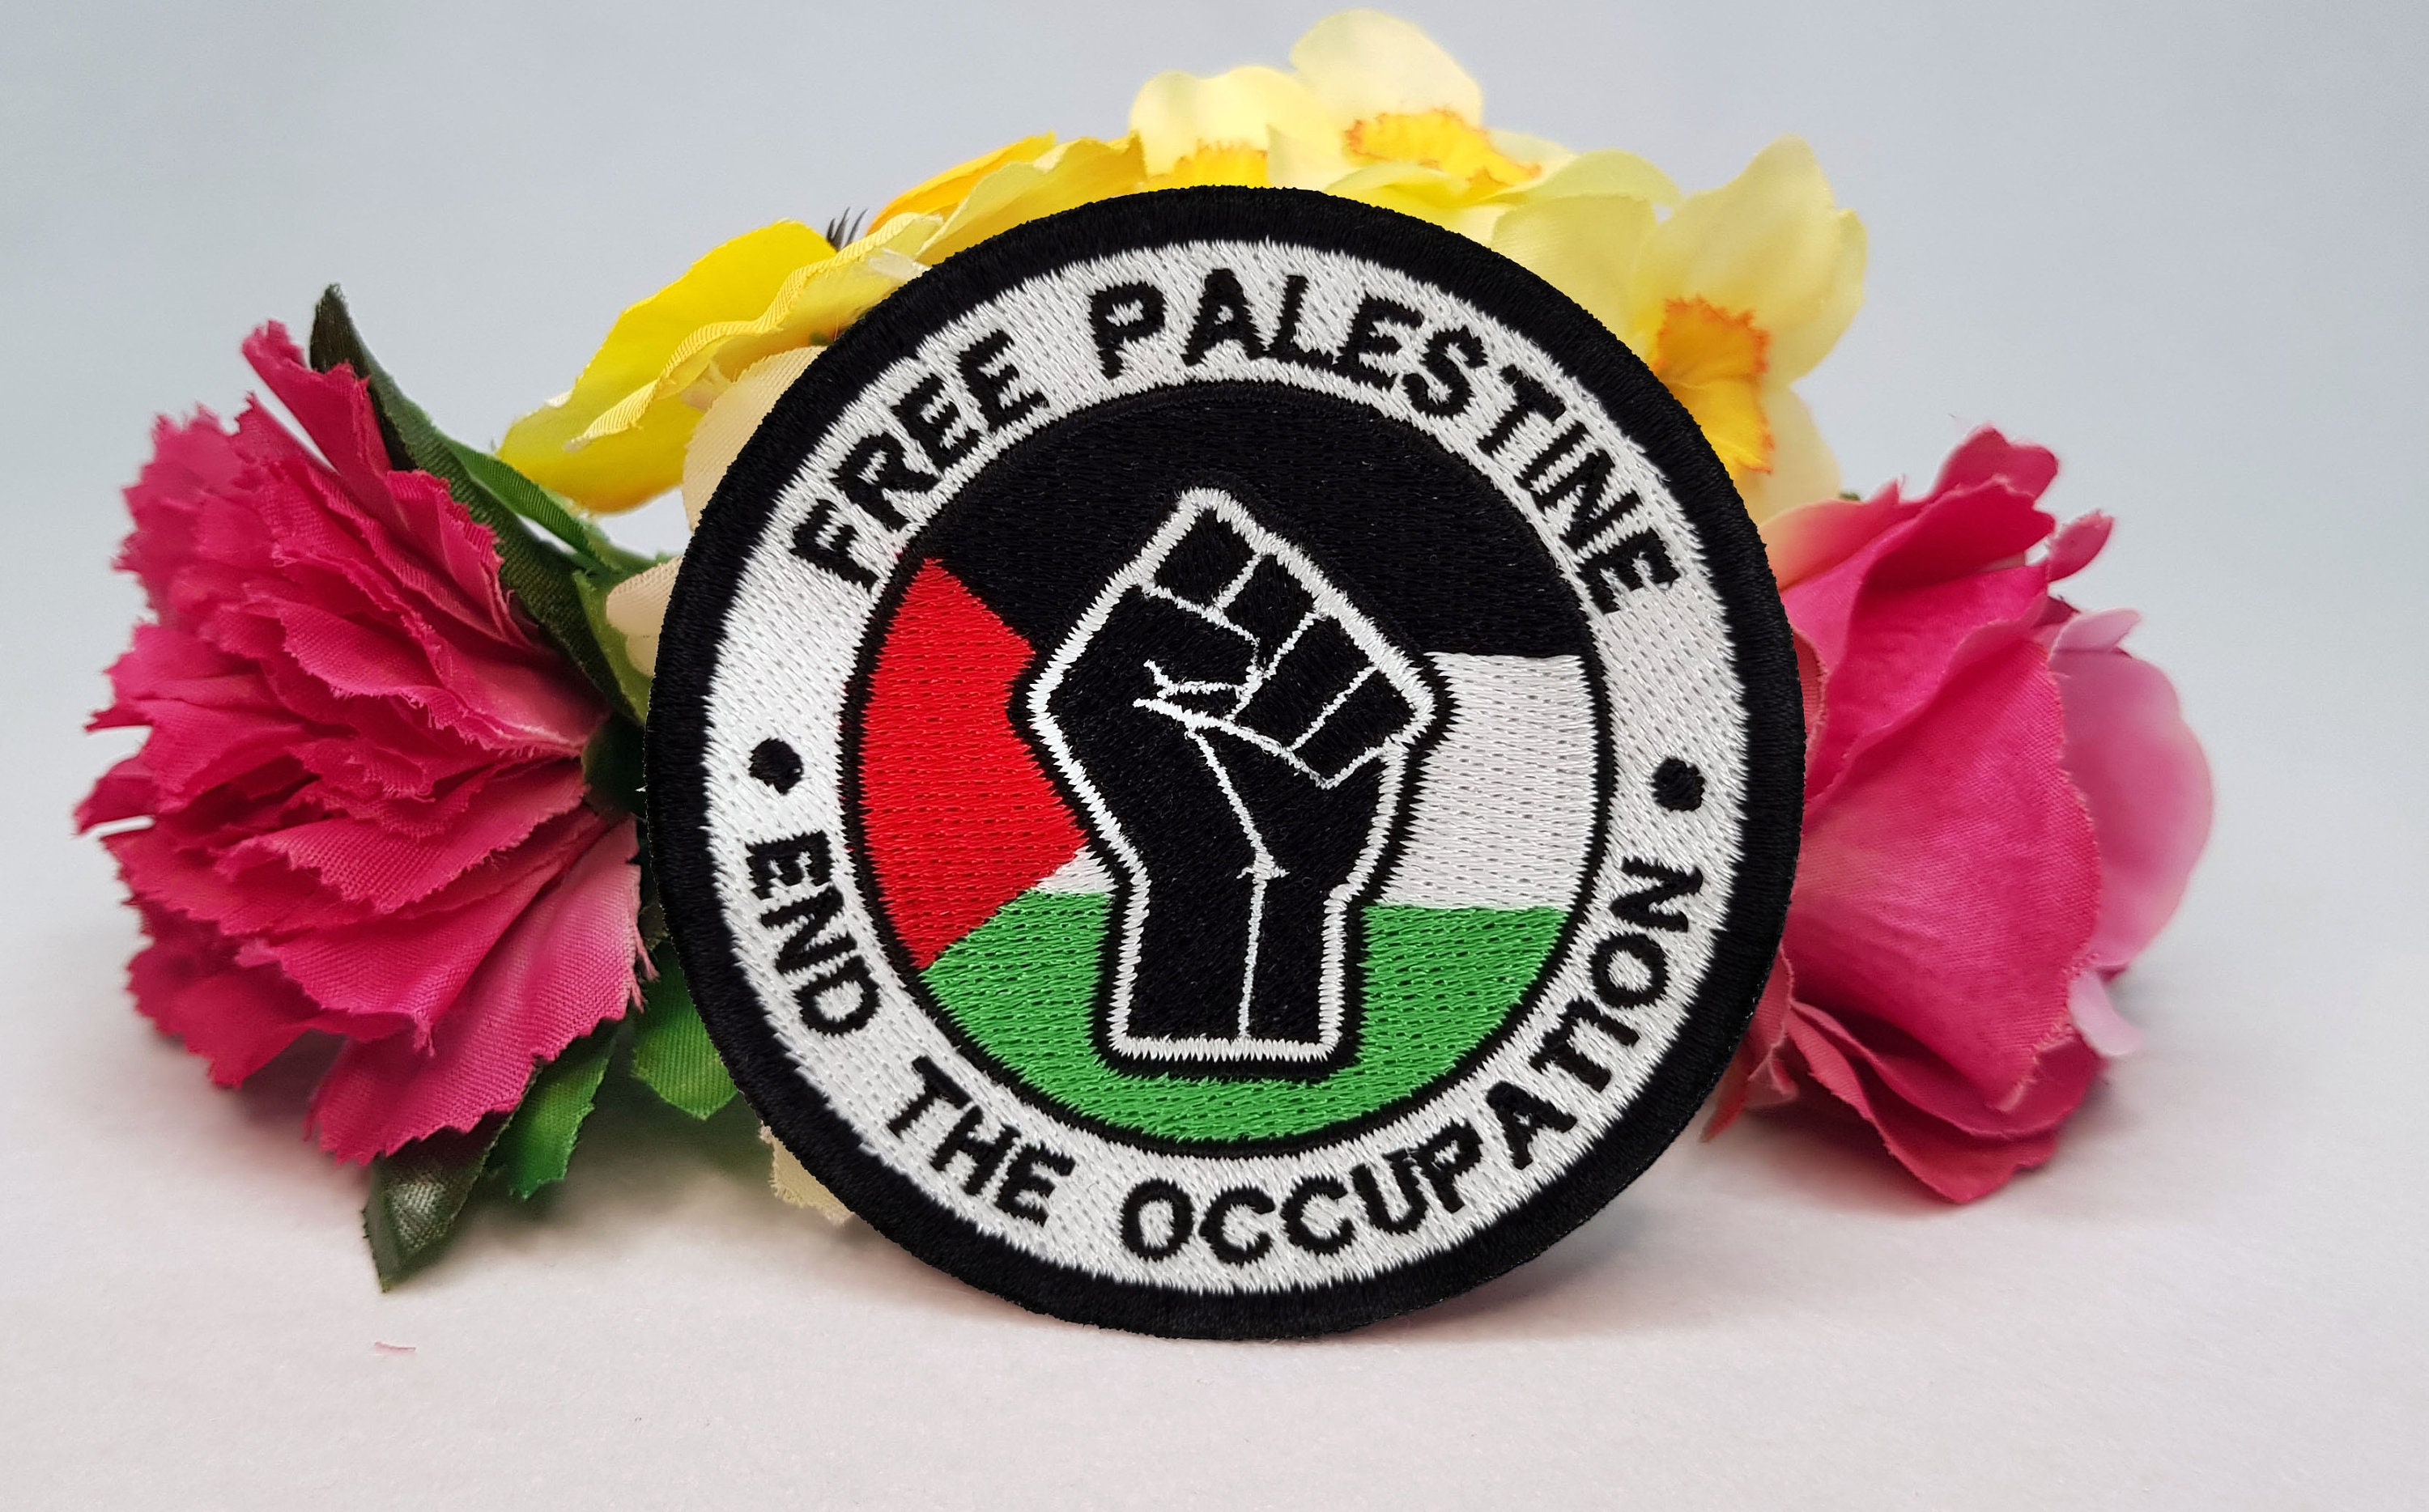 Duftbaum für Auto Free Palästina